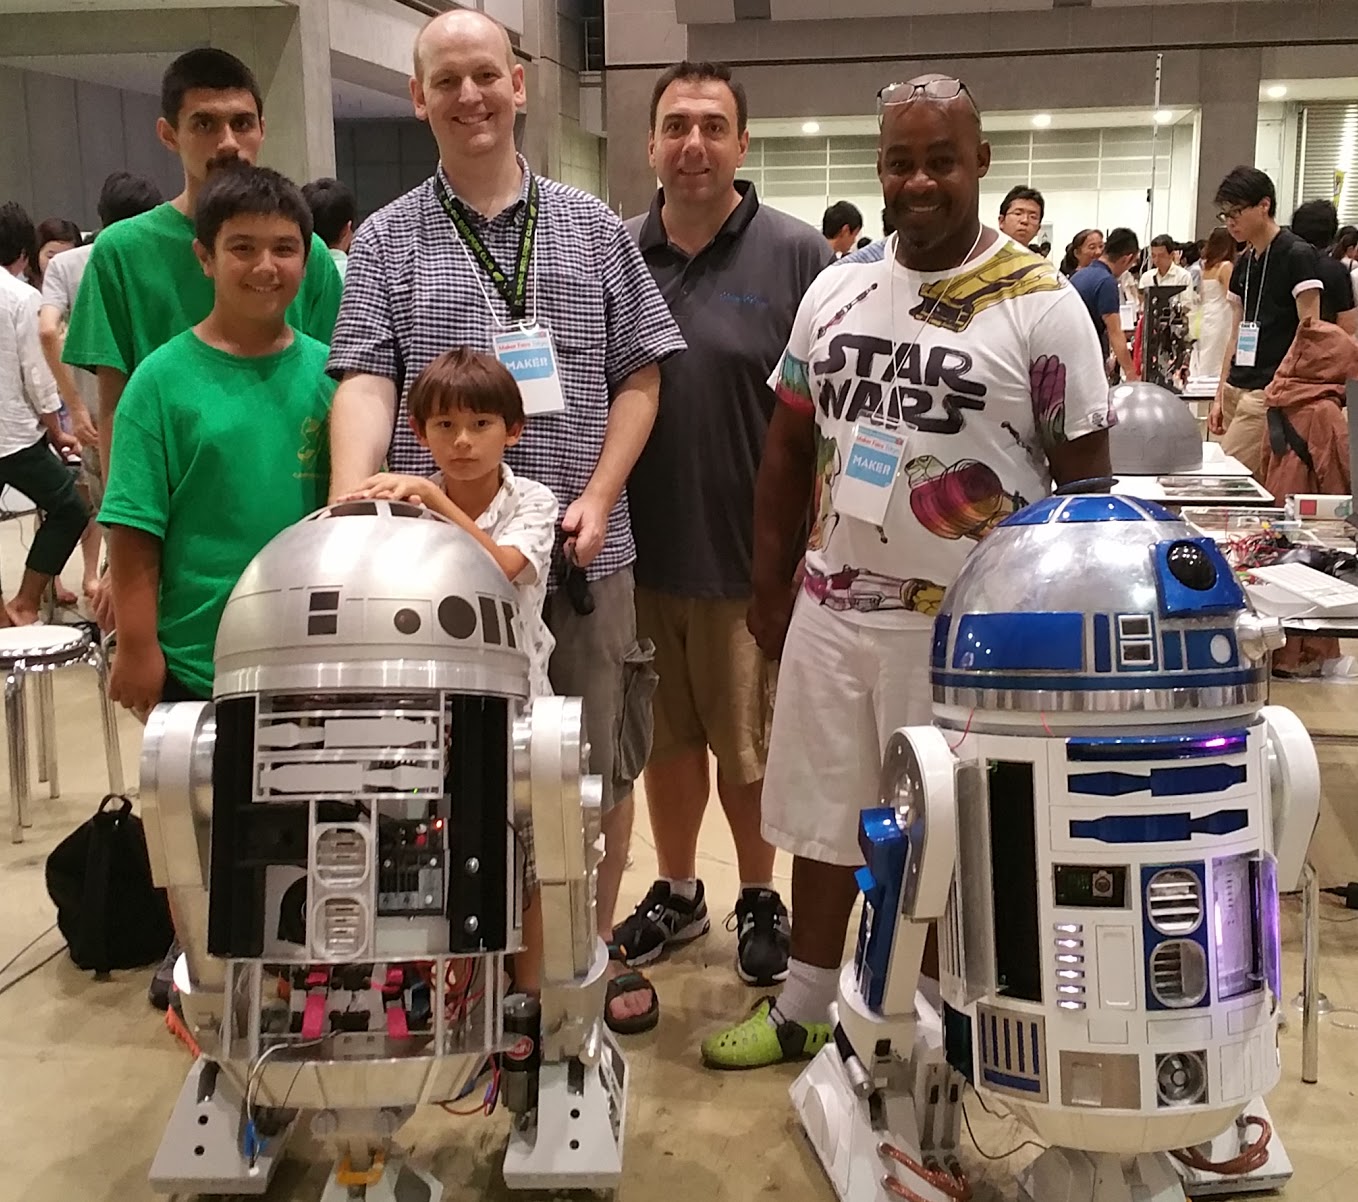 R2-D2 Builders Club